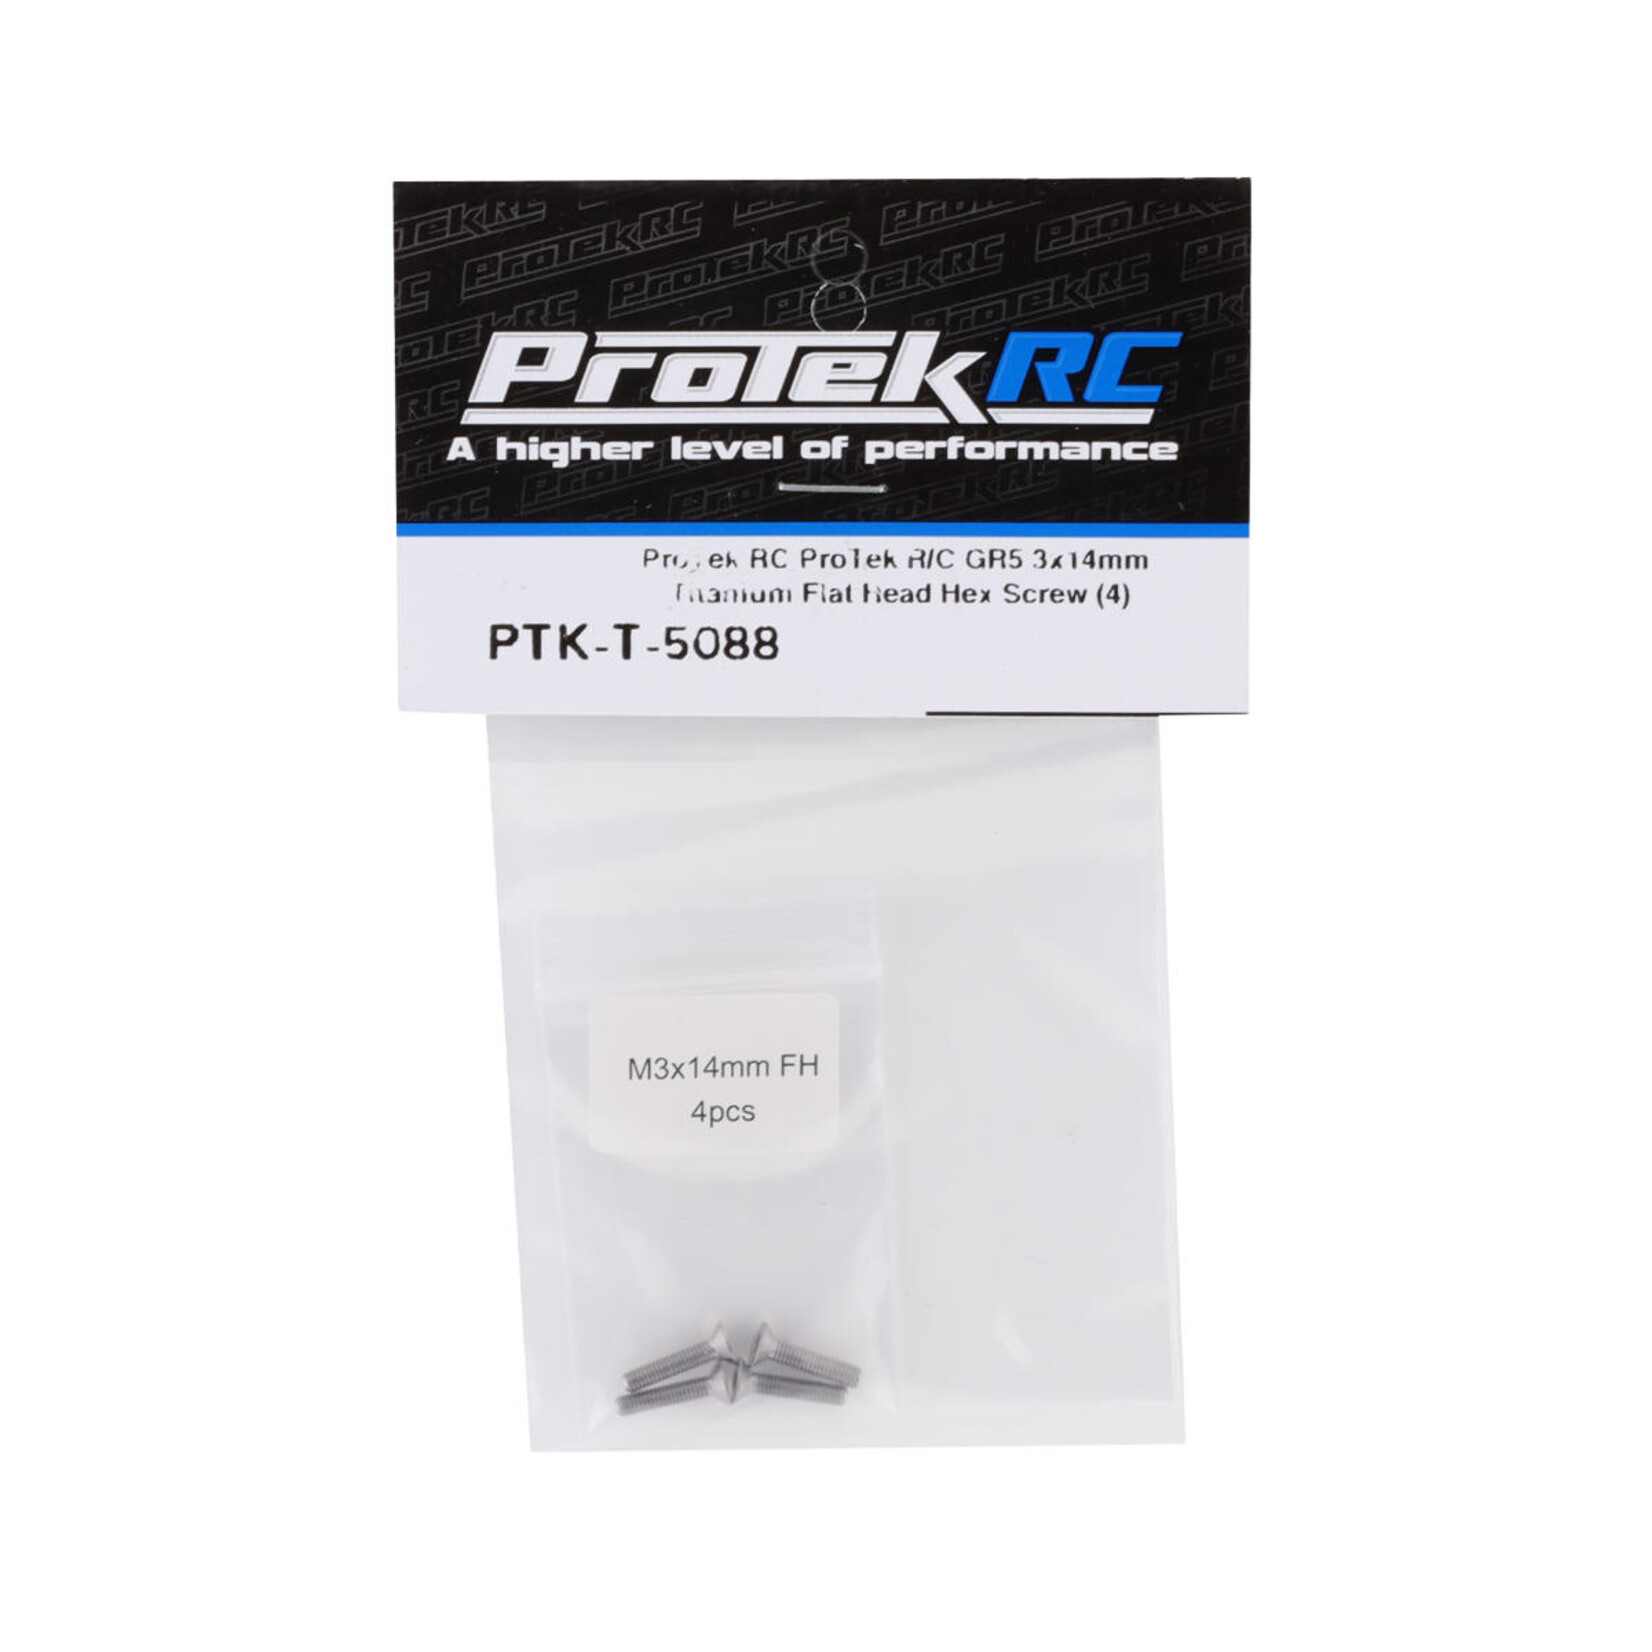 ProTek RC ProTek RC 3x14mm "Grade 5" Titanium Flat Head Hex Screw (4) #PTK-T-5088